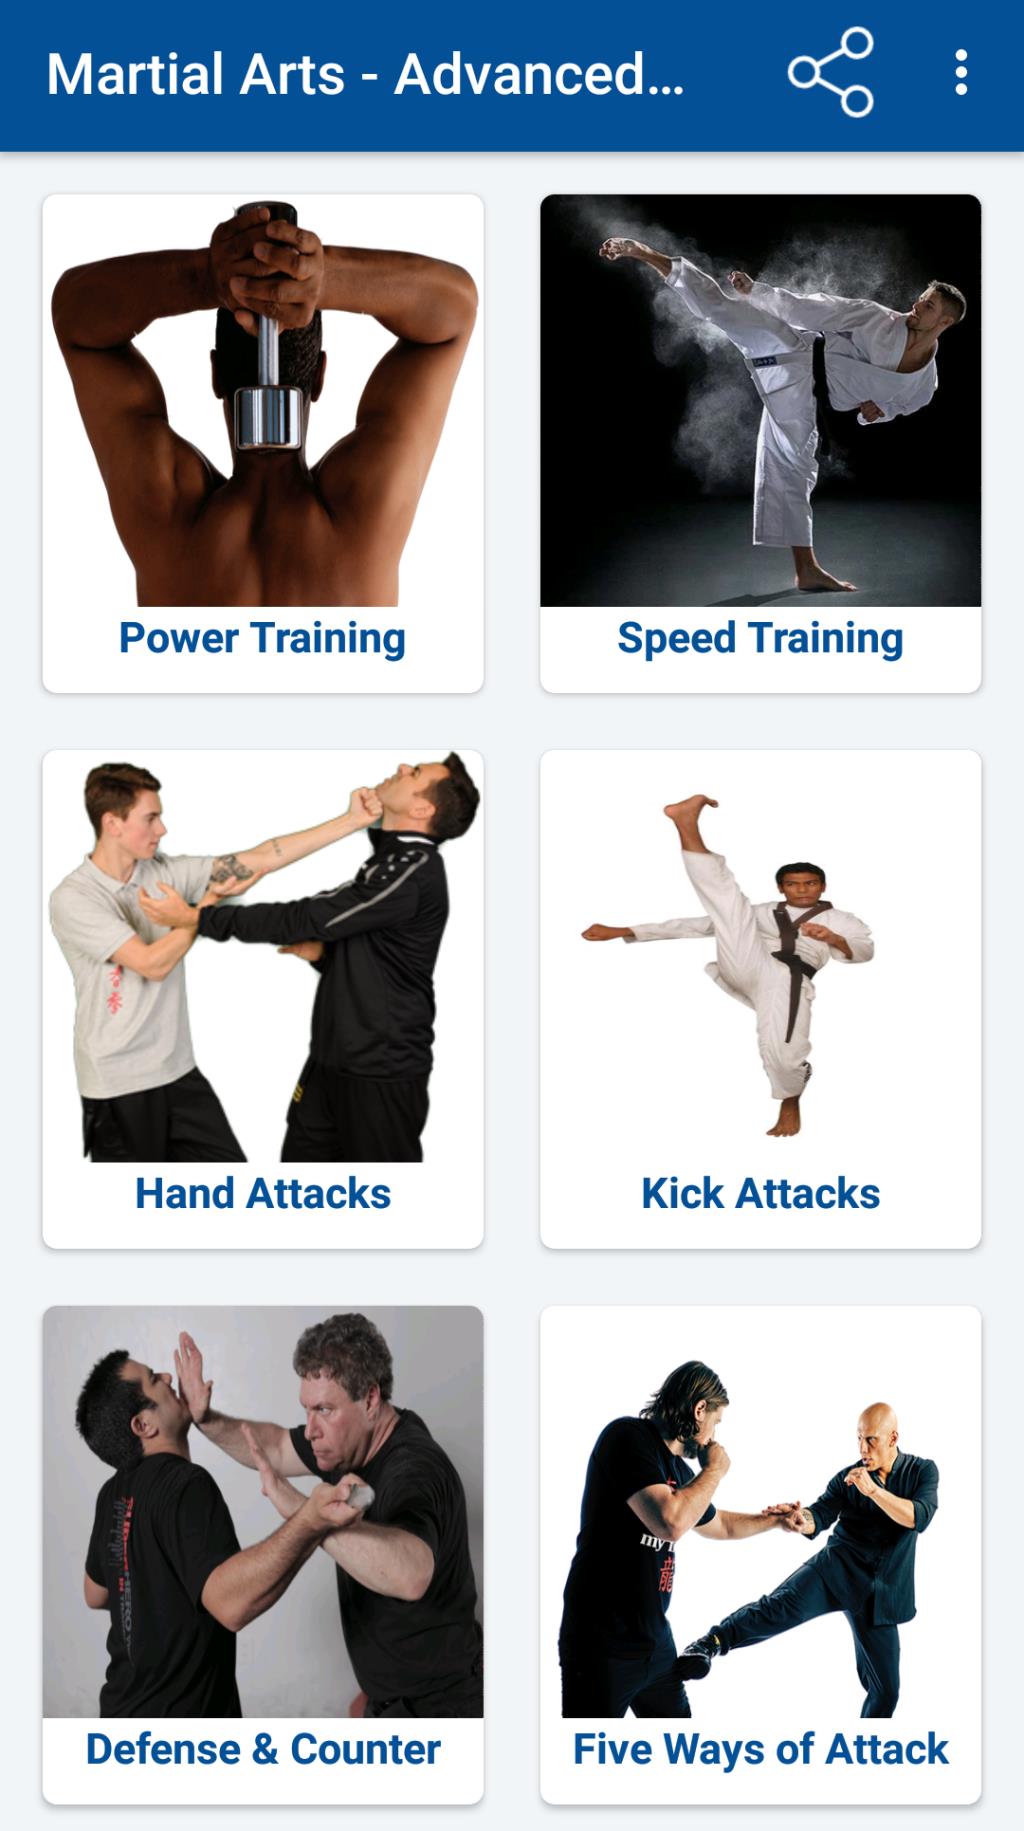 Os 6 melhores aplicativos Android para aprender artes marciais